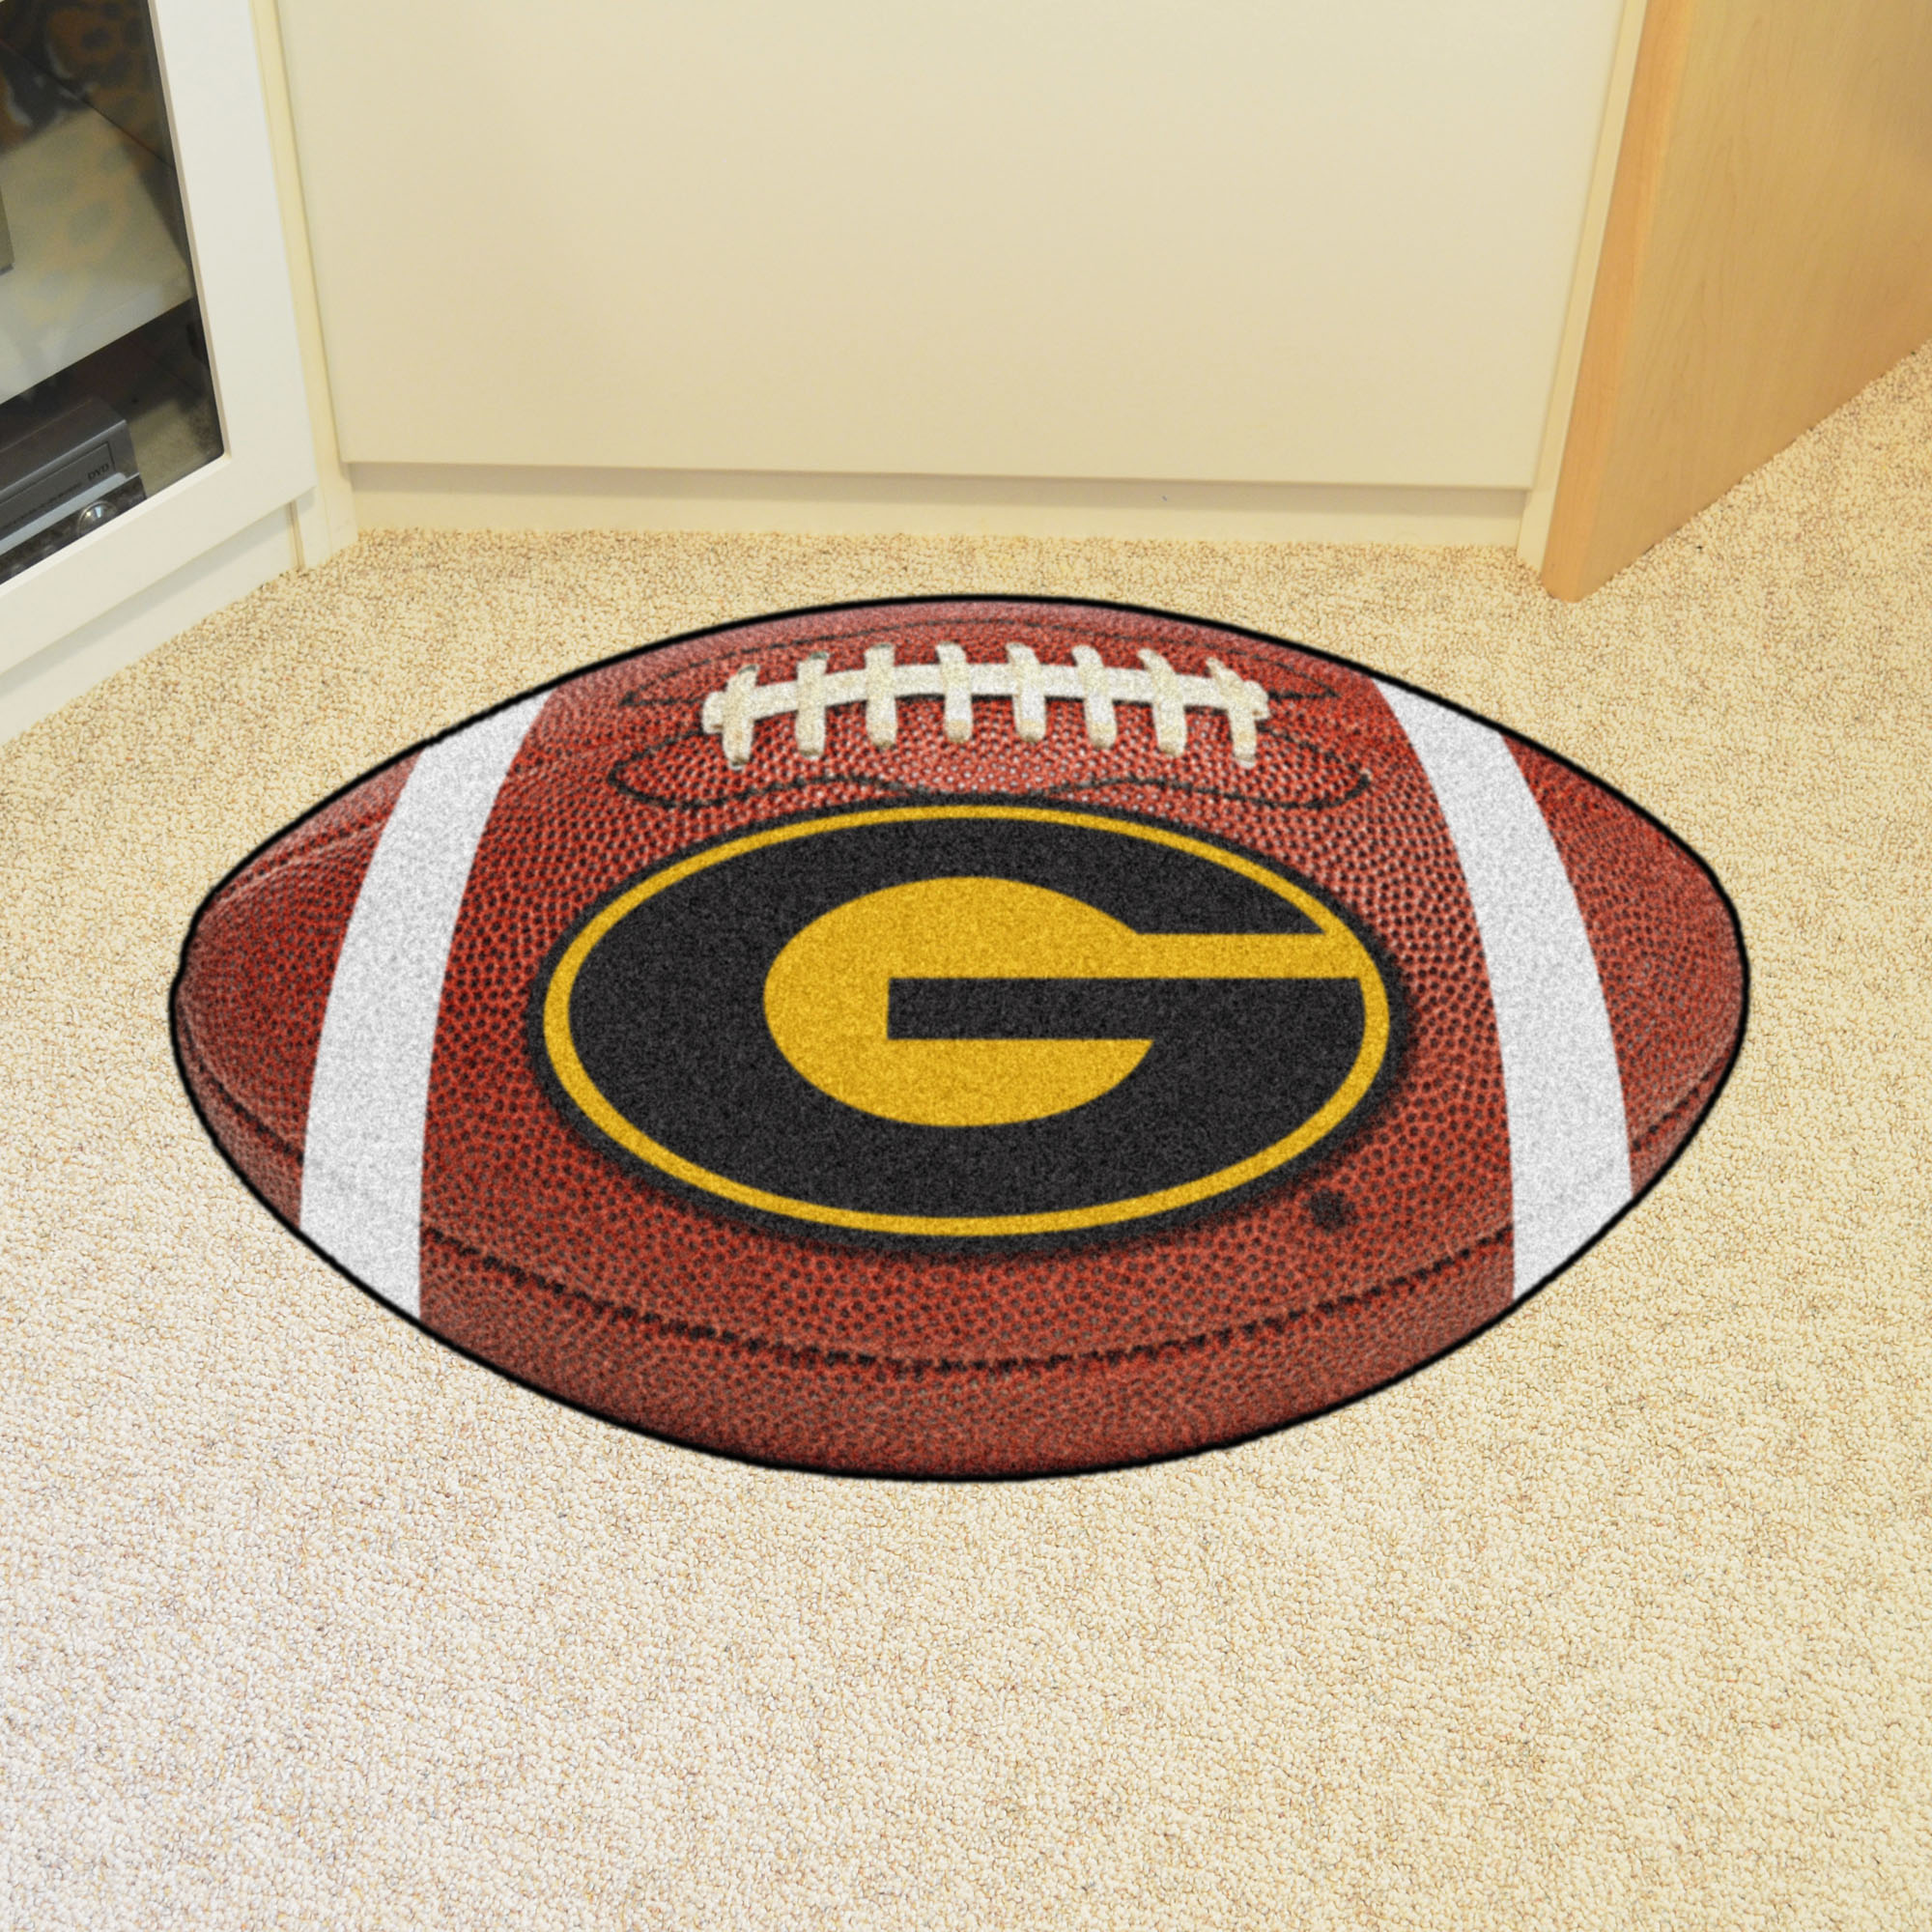 Grambling State University Ball Shaped Area rugs (Ball Shaped Area Rugs: Football)